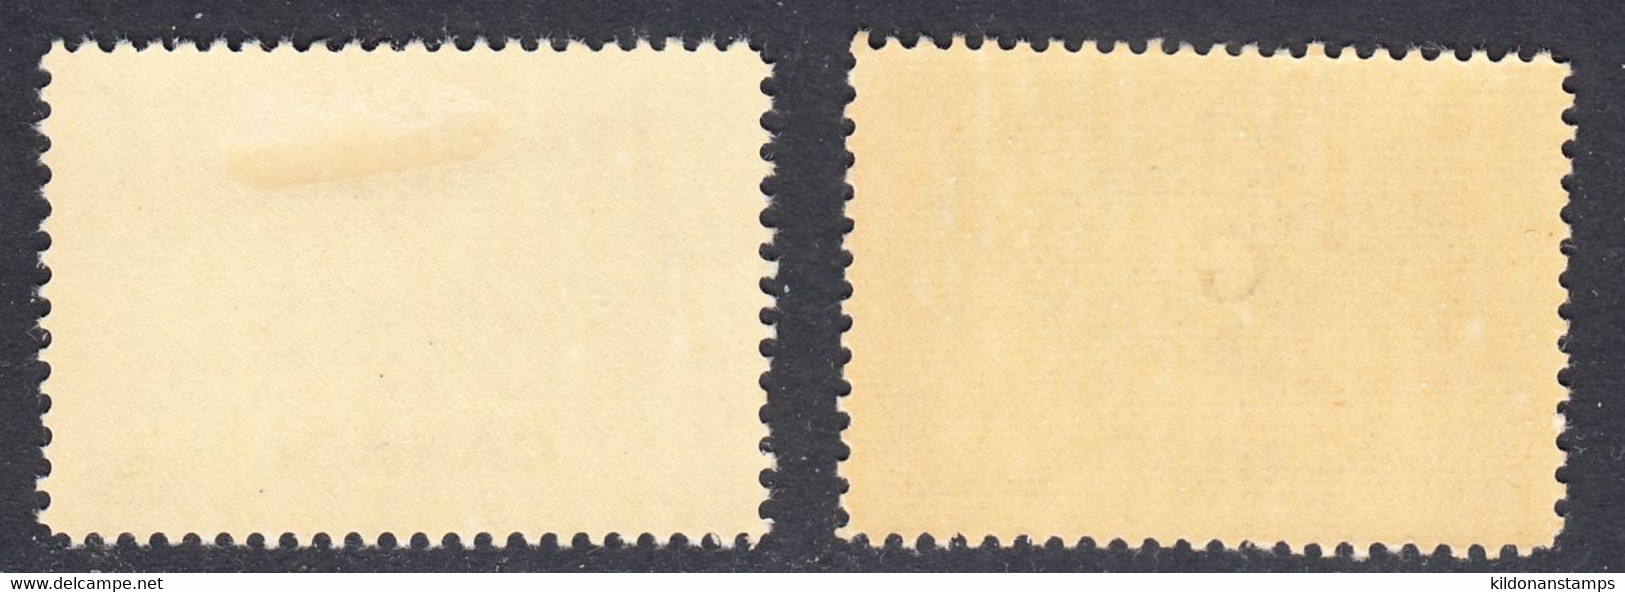 Canada 1952 Mint Mounted, Sc# 316, O30, SG - Nuovi